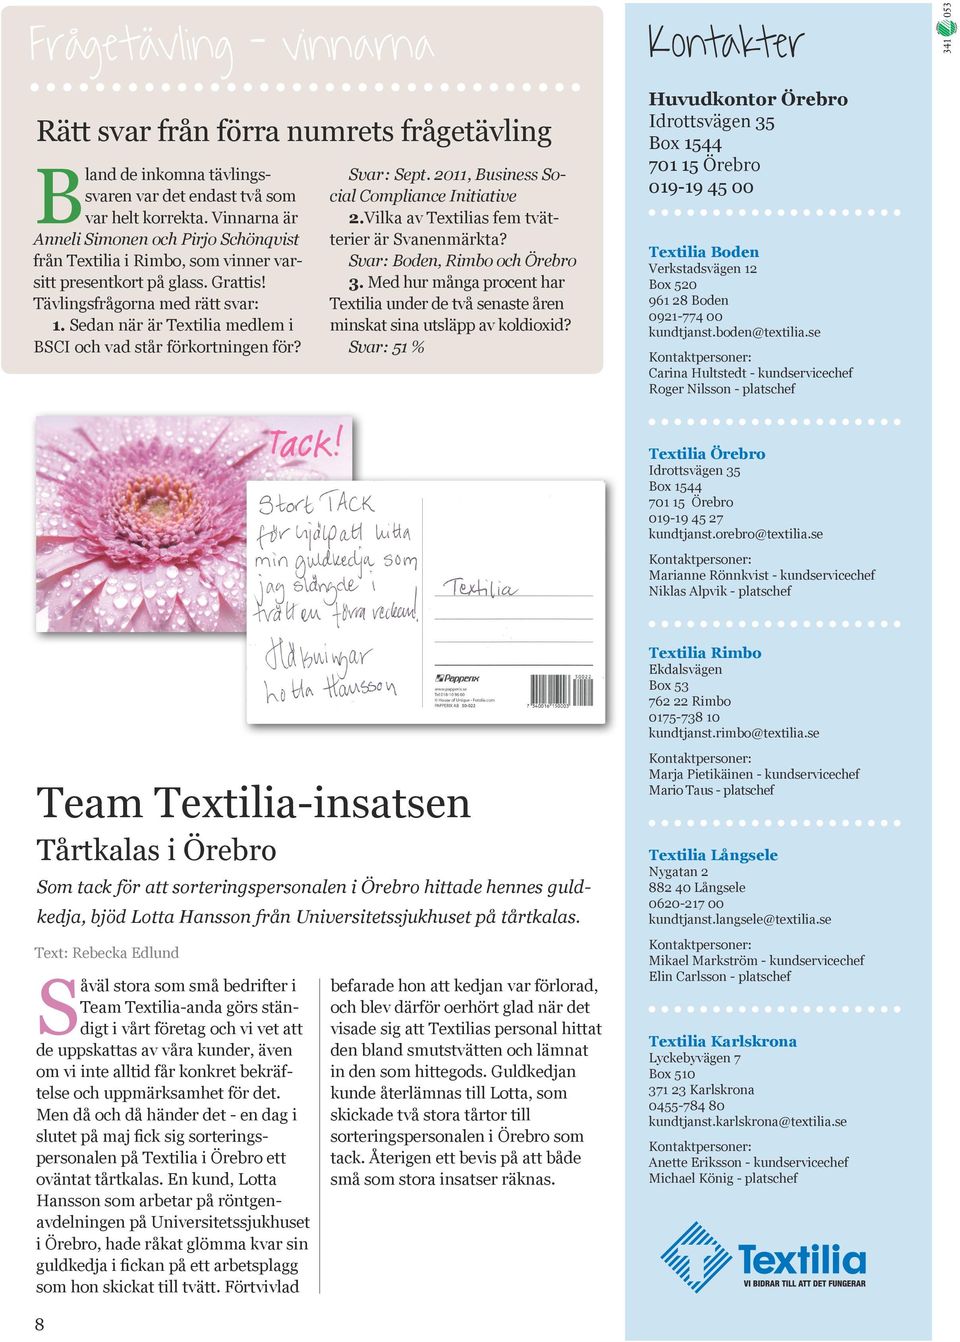 Sedan när är Textilia medlem i BSCI och vad står förkortningen för? Svar: Sept. 2011, Business Social Compliance Initiative 2.Vilka av Textilias fem tvätterier är Svanenmärkta?